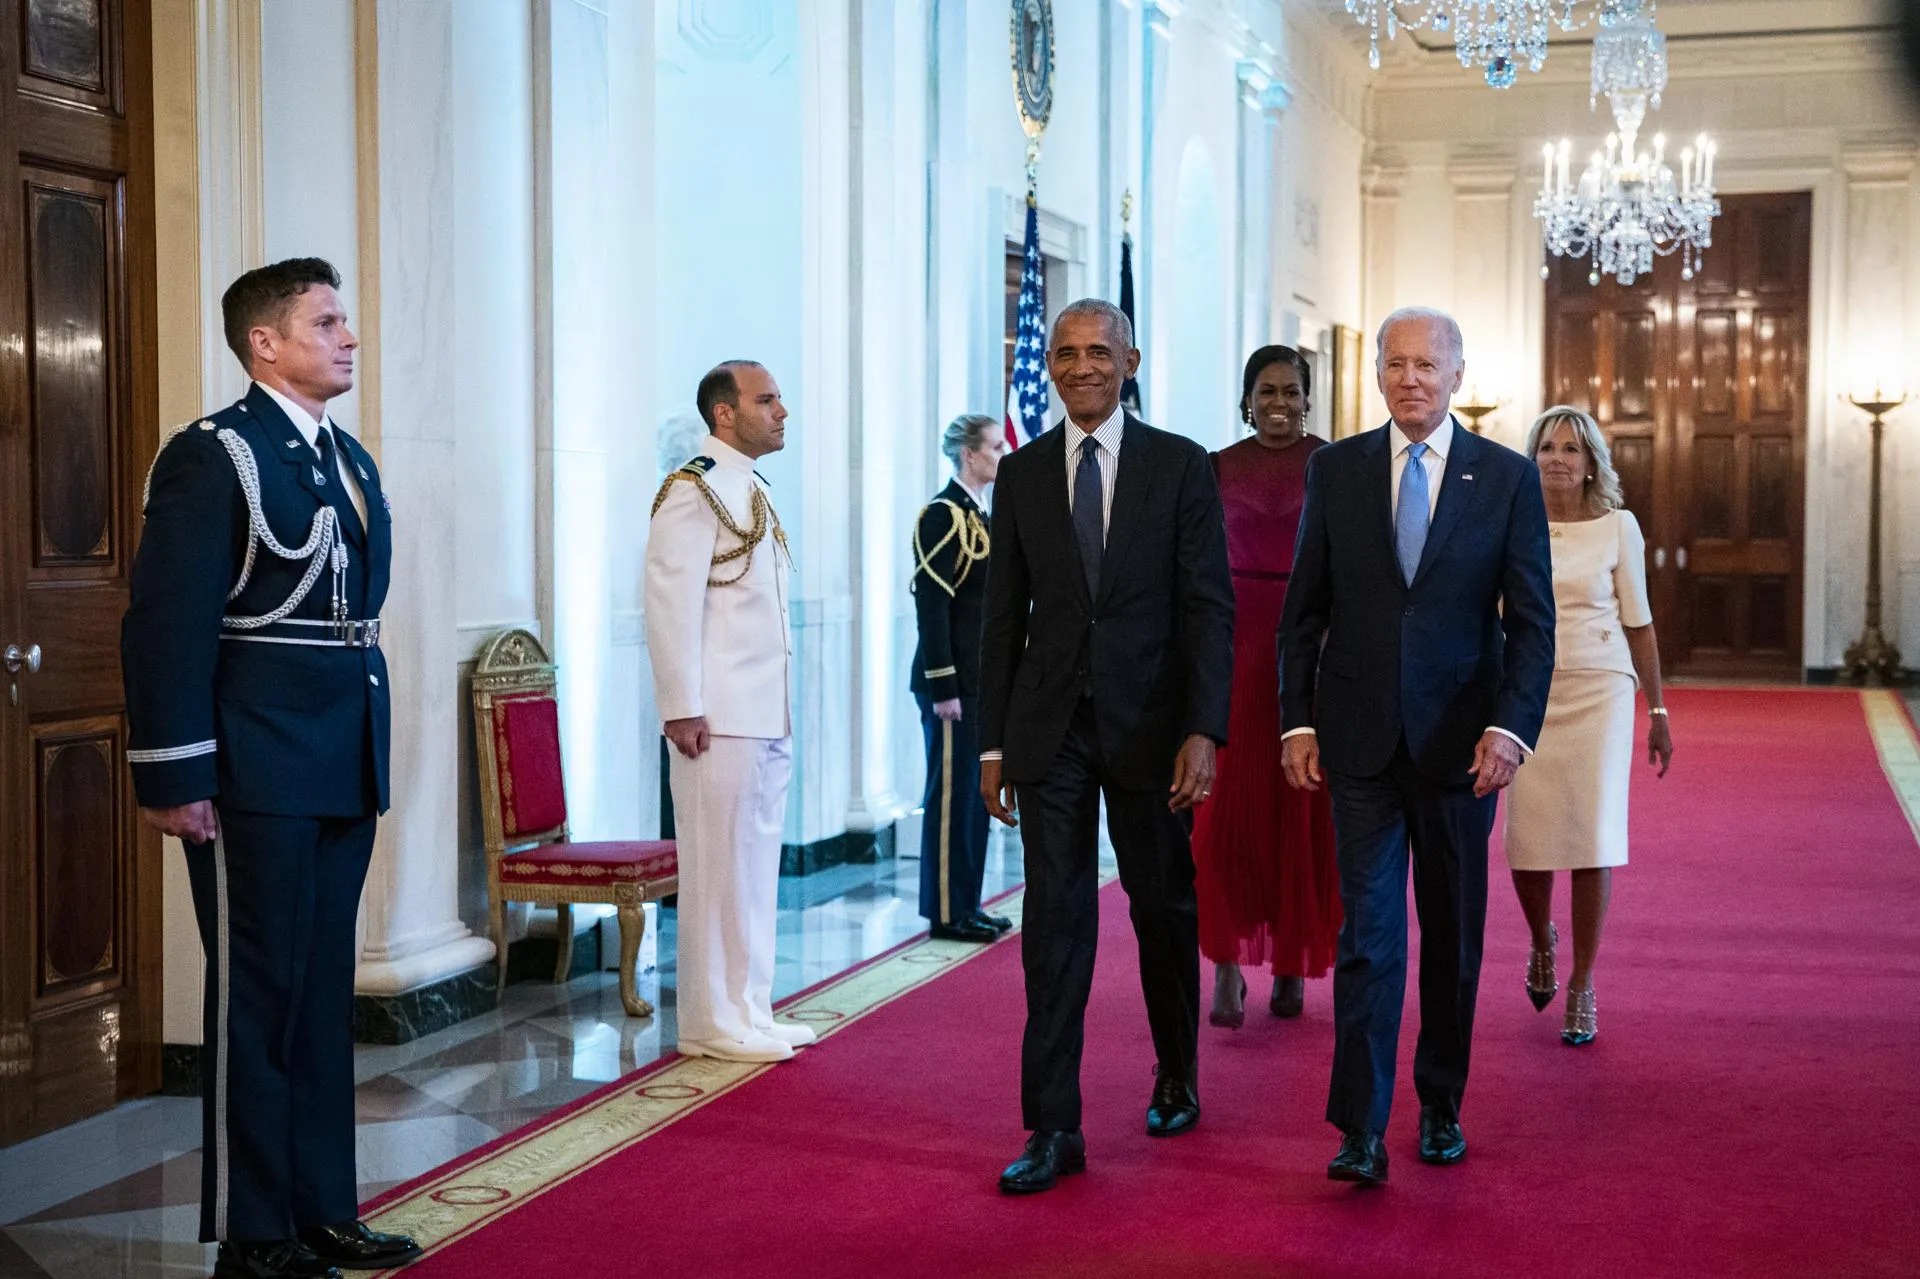 Барак Обама и Джо Байден с супругами / Al Drago — Pool via CNP/Consolidated News Photos